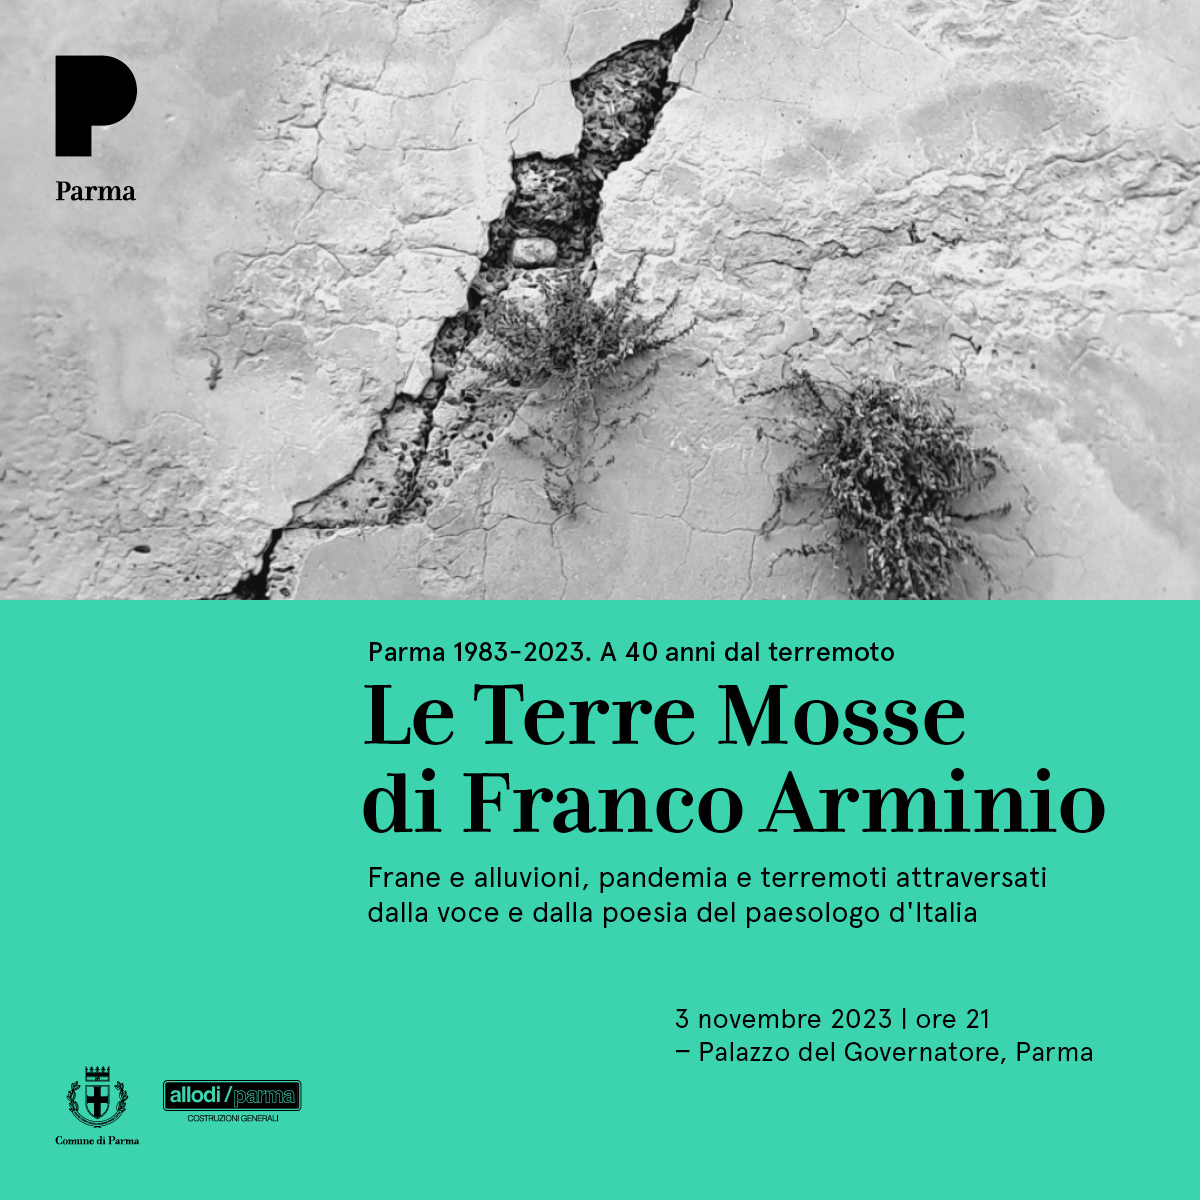 Le Terre Mosse: incontro con Franco Arminio nei quarant'anni dal terremoto  che colpì Parma 